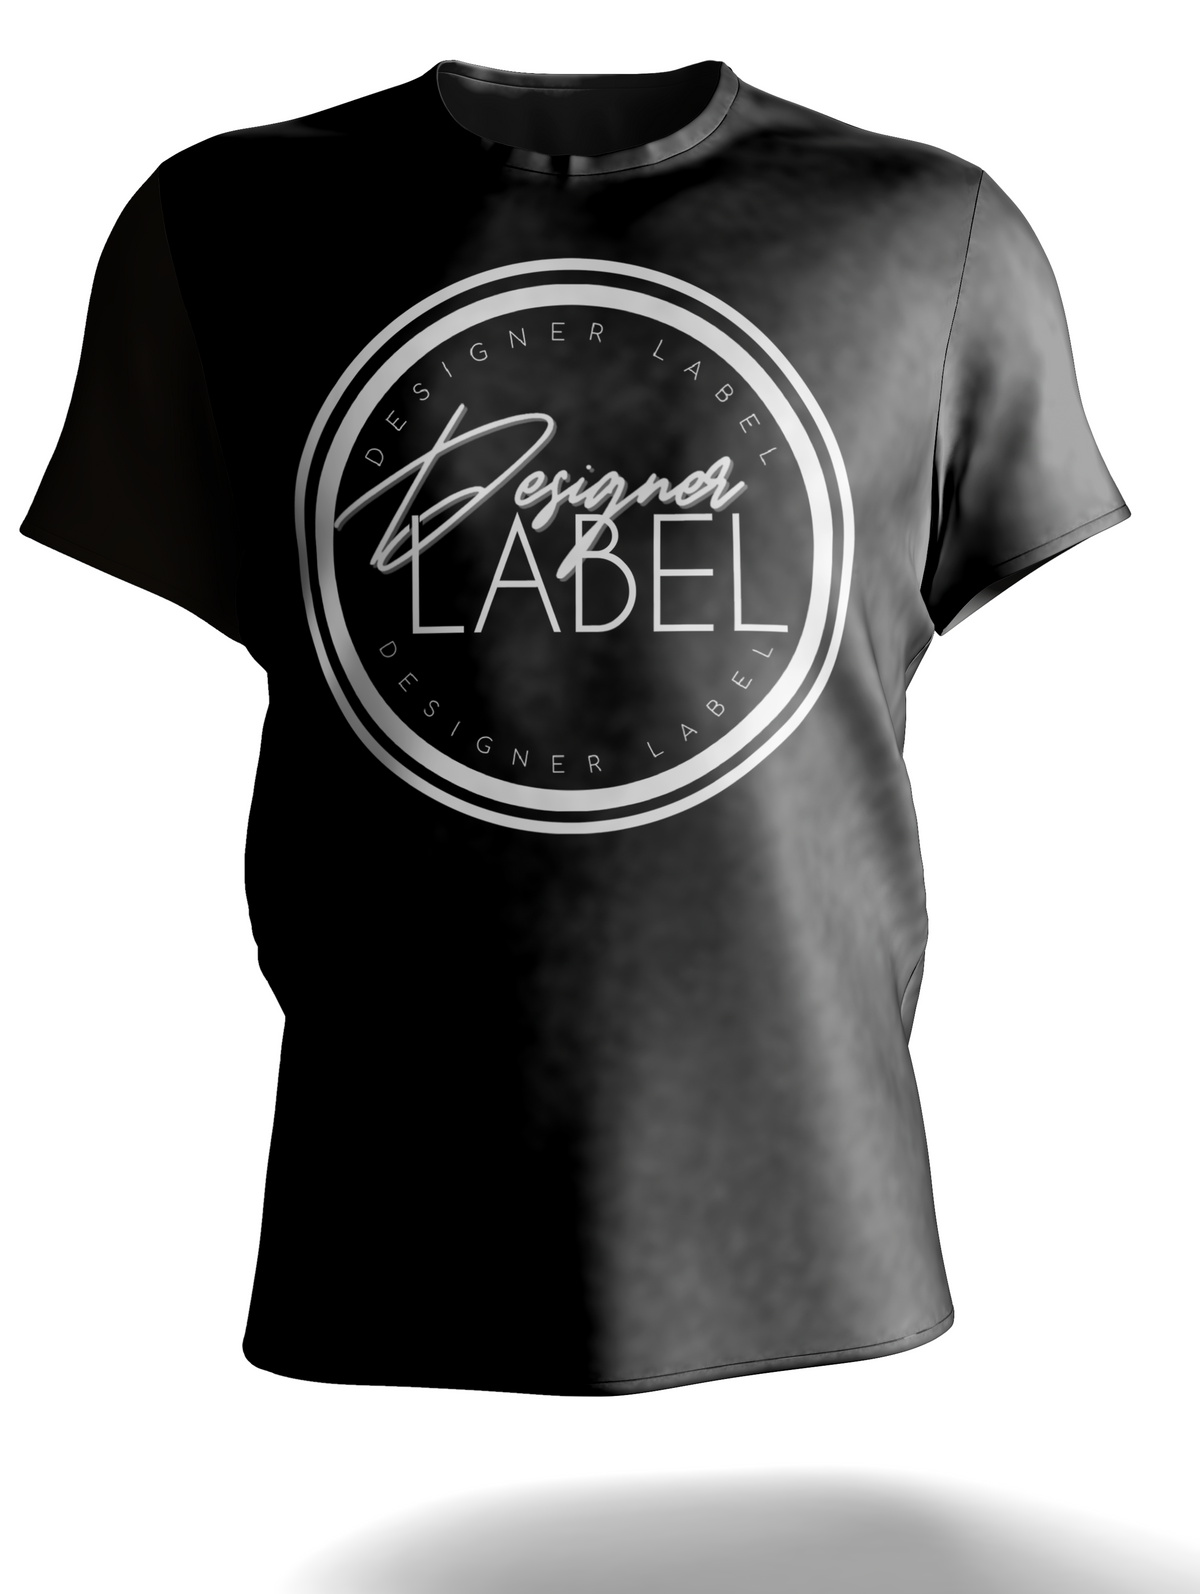 Designer Label Signature T-Shirt